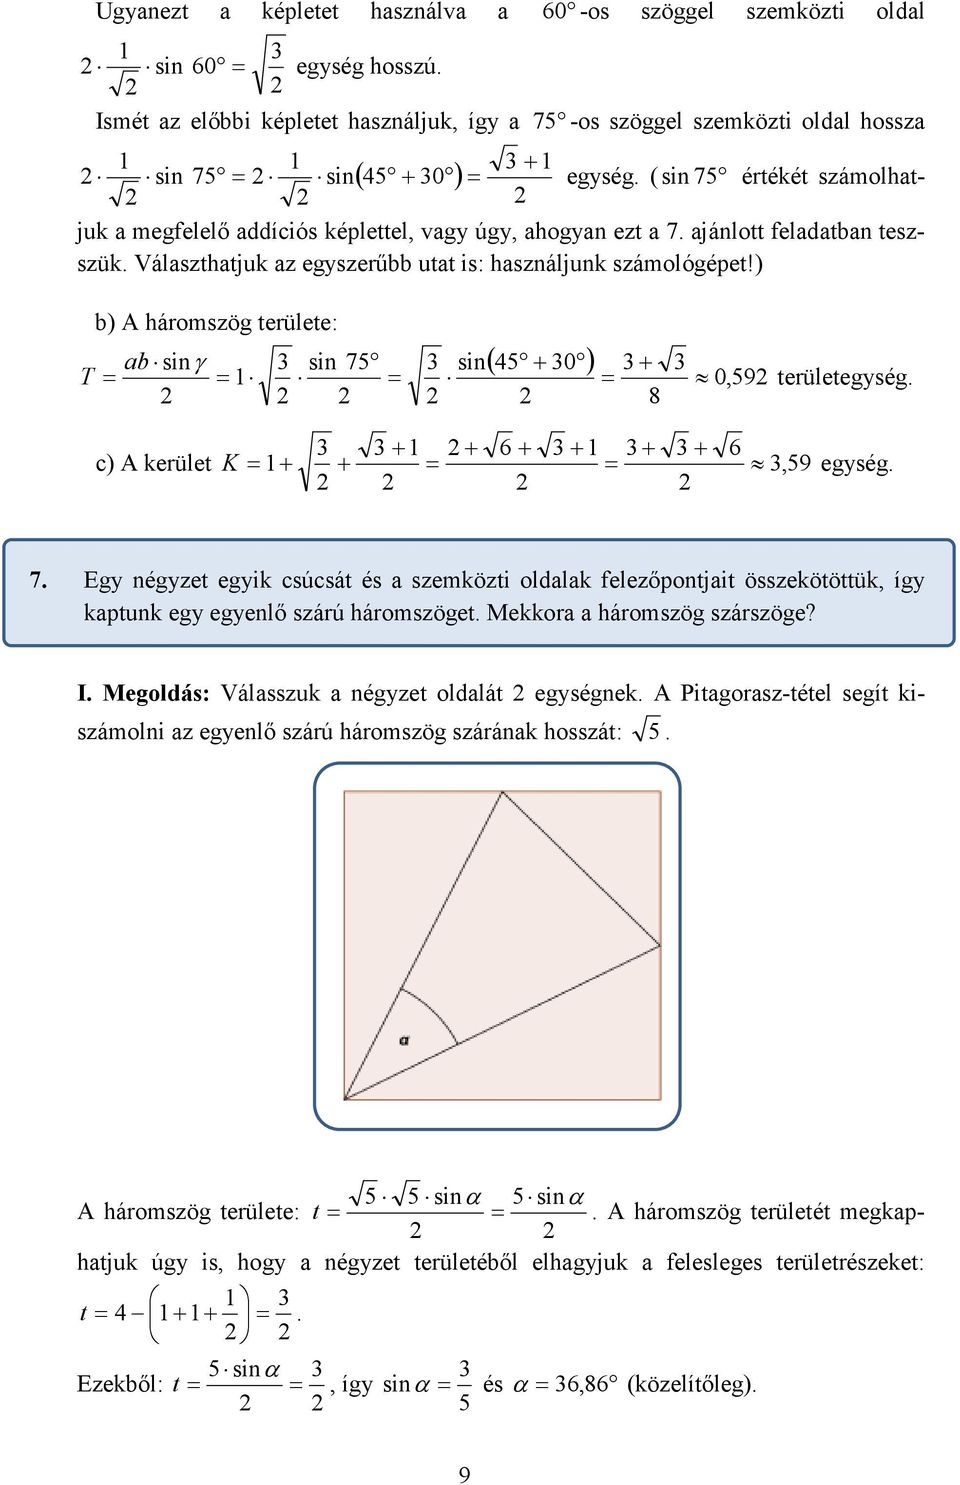 ) b) A háromszög területe: ( + 0 ) ab sinγ sin 7 sin + T = = = = 0,9 területegység 8 + + + + + + c) A kerület K = + + = =, 9 egység 7 Egy négyzet egyik csúcsát és a szemközti oldalak felezőpontjait